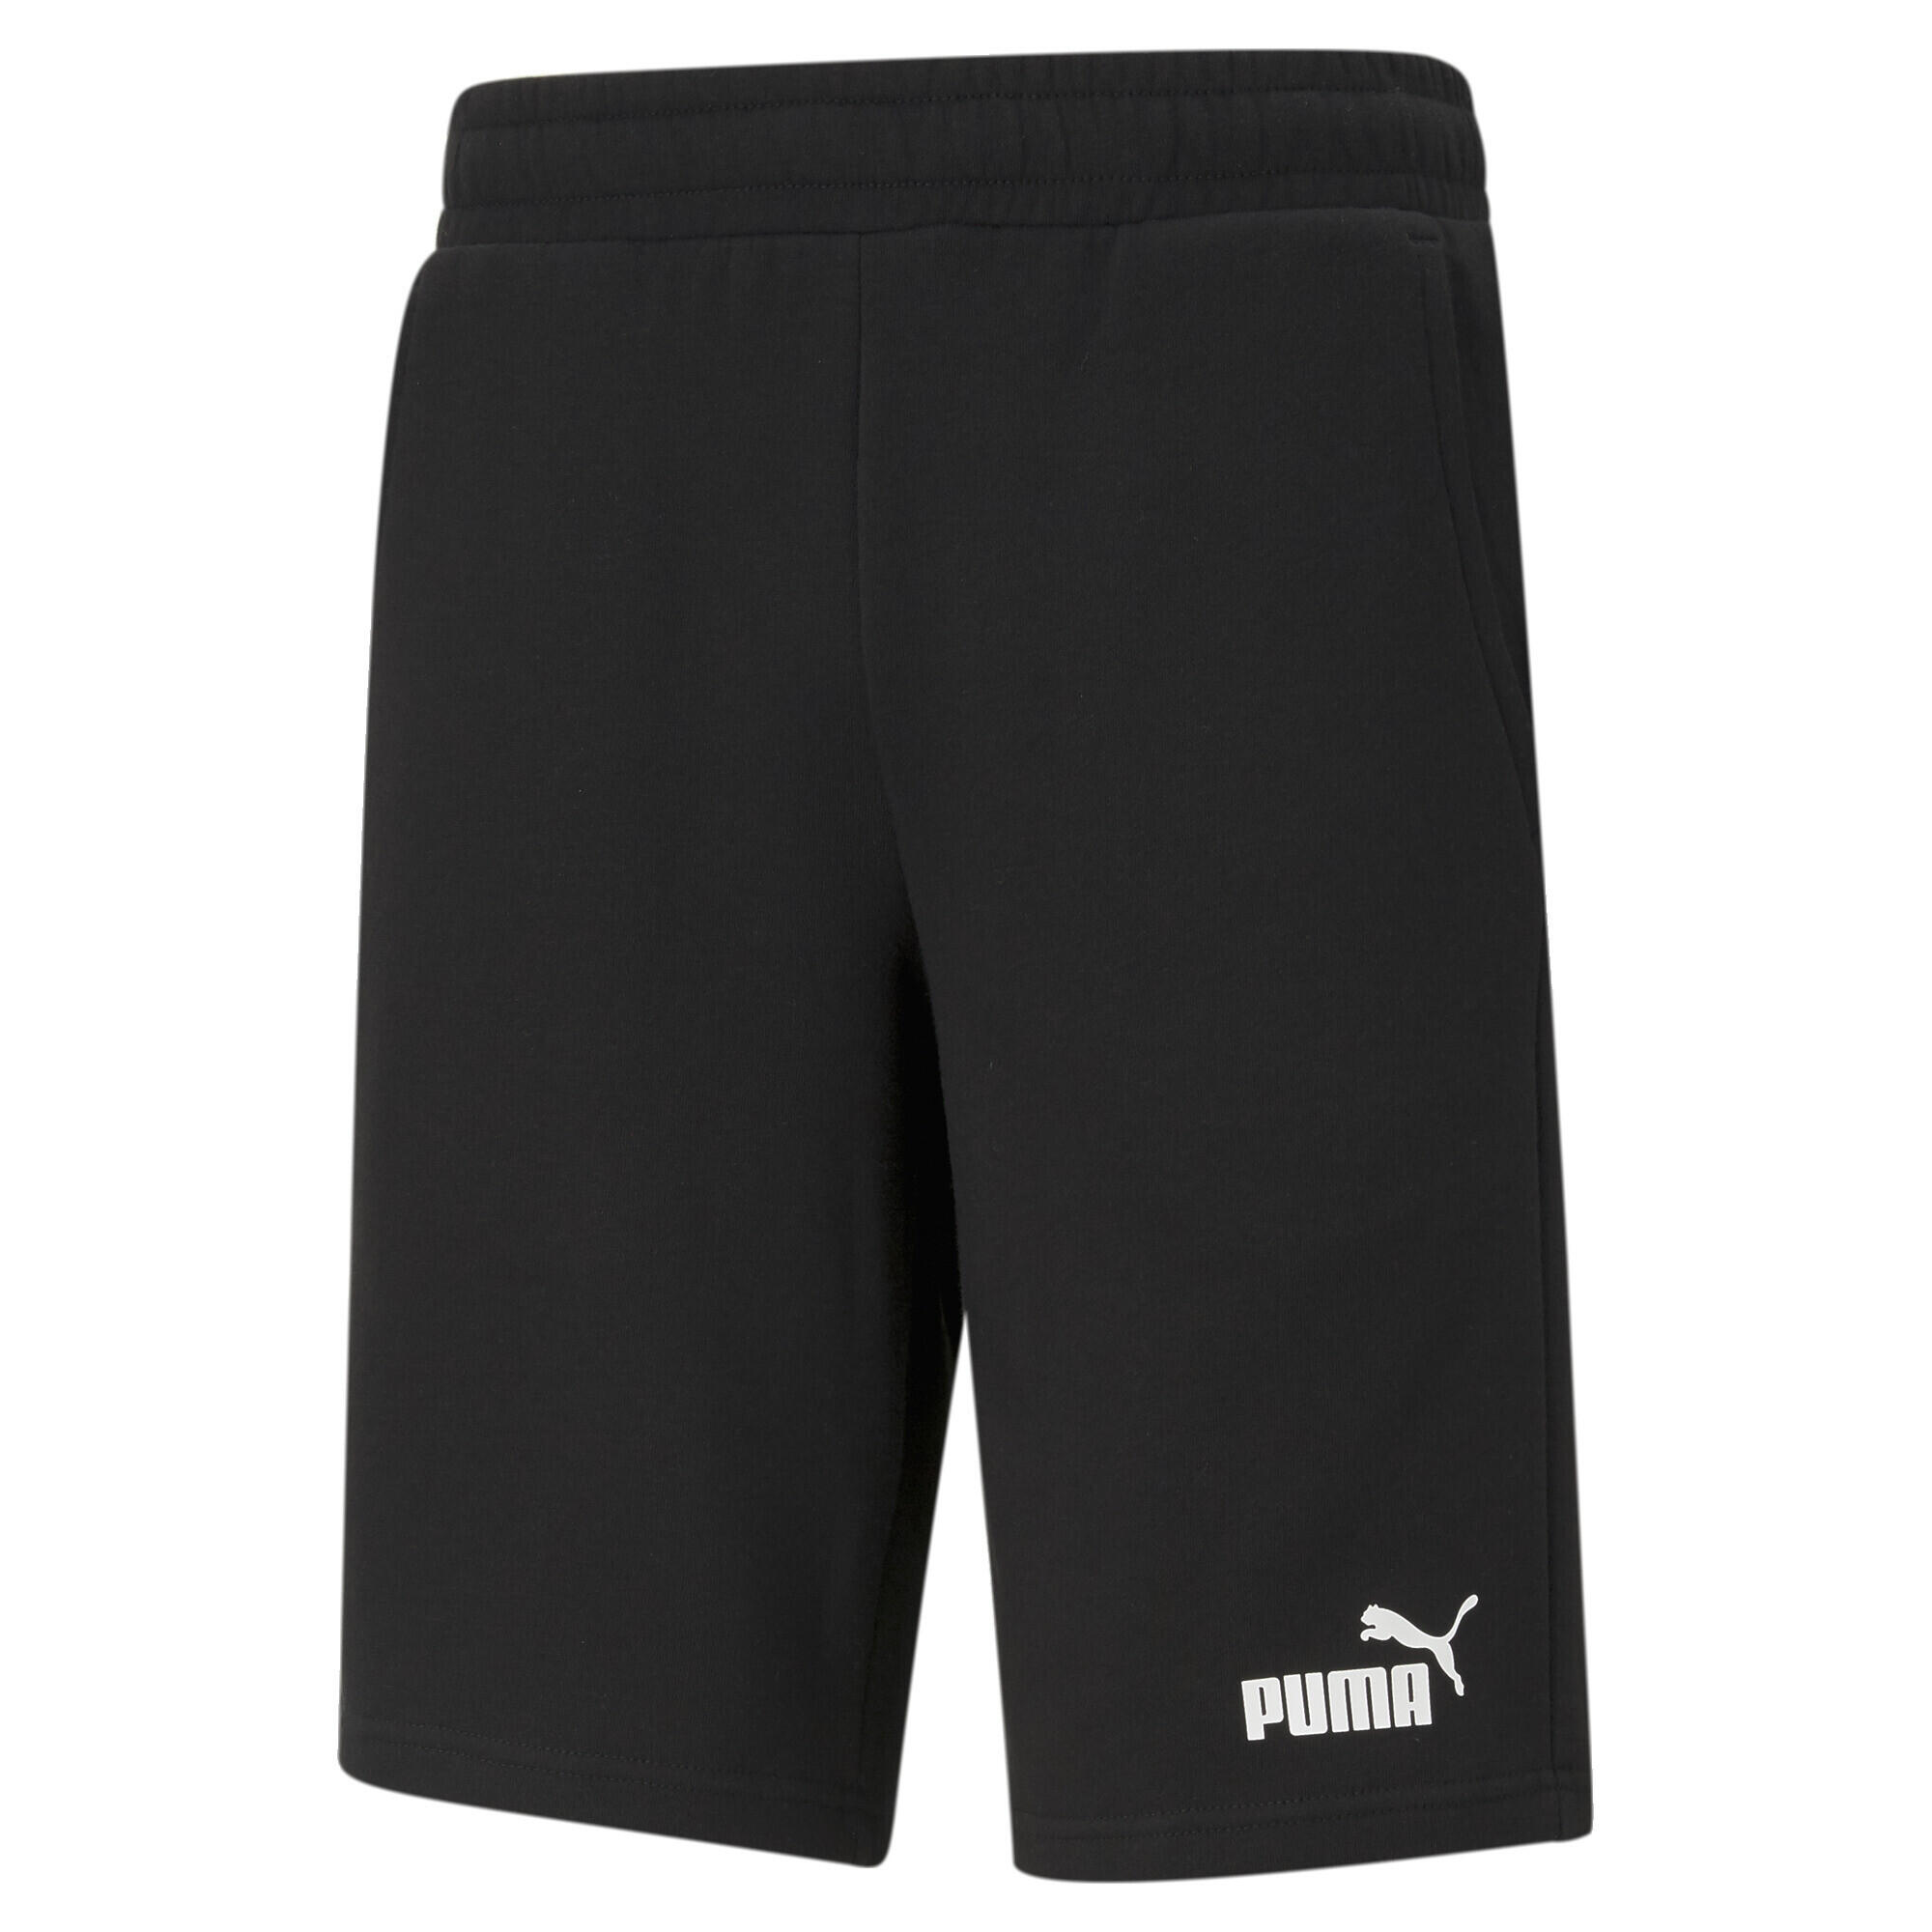 PUMA PUMA Mens Essentials Shorts - Black